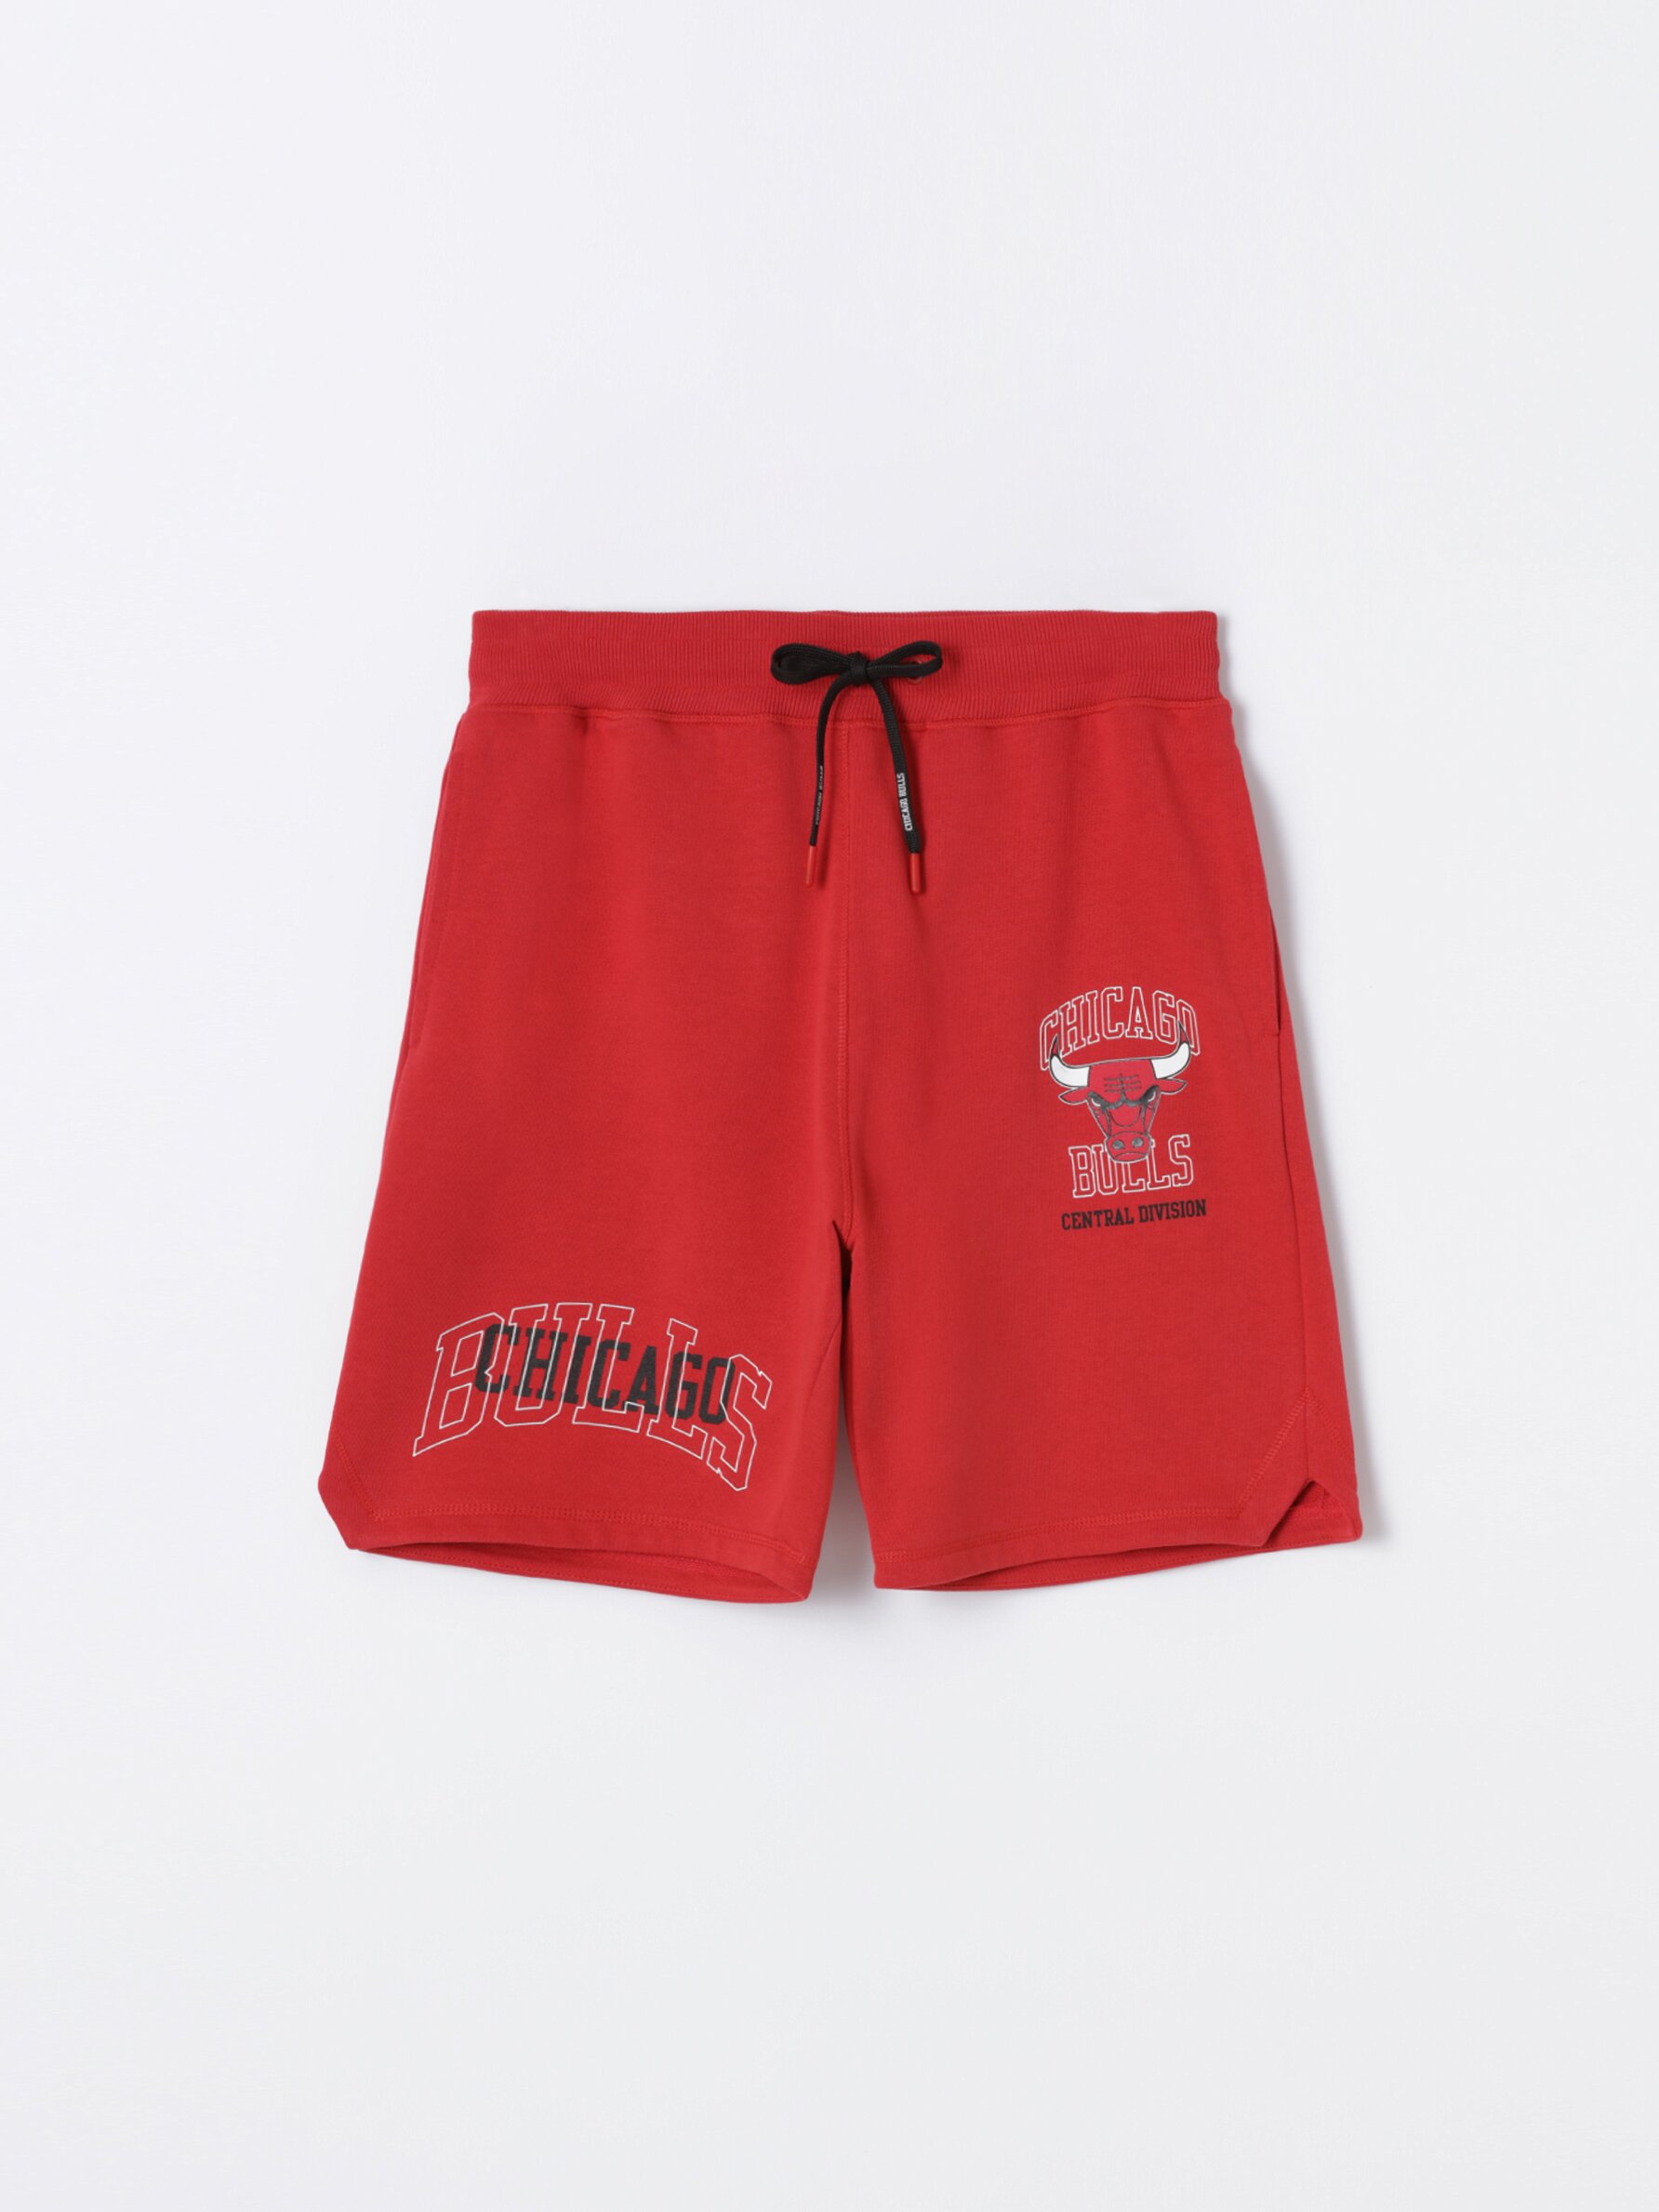 Short Chicago Bulls - Shorts - Clothing - Men